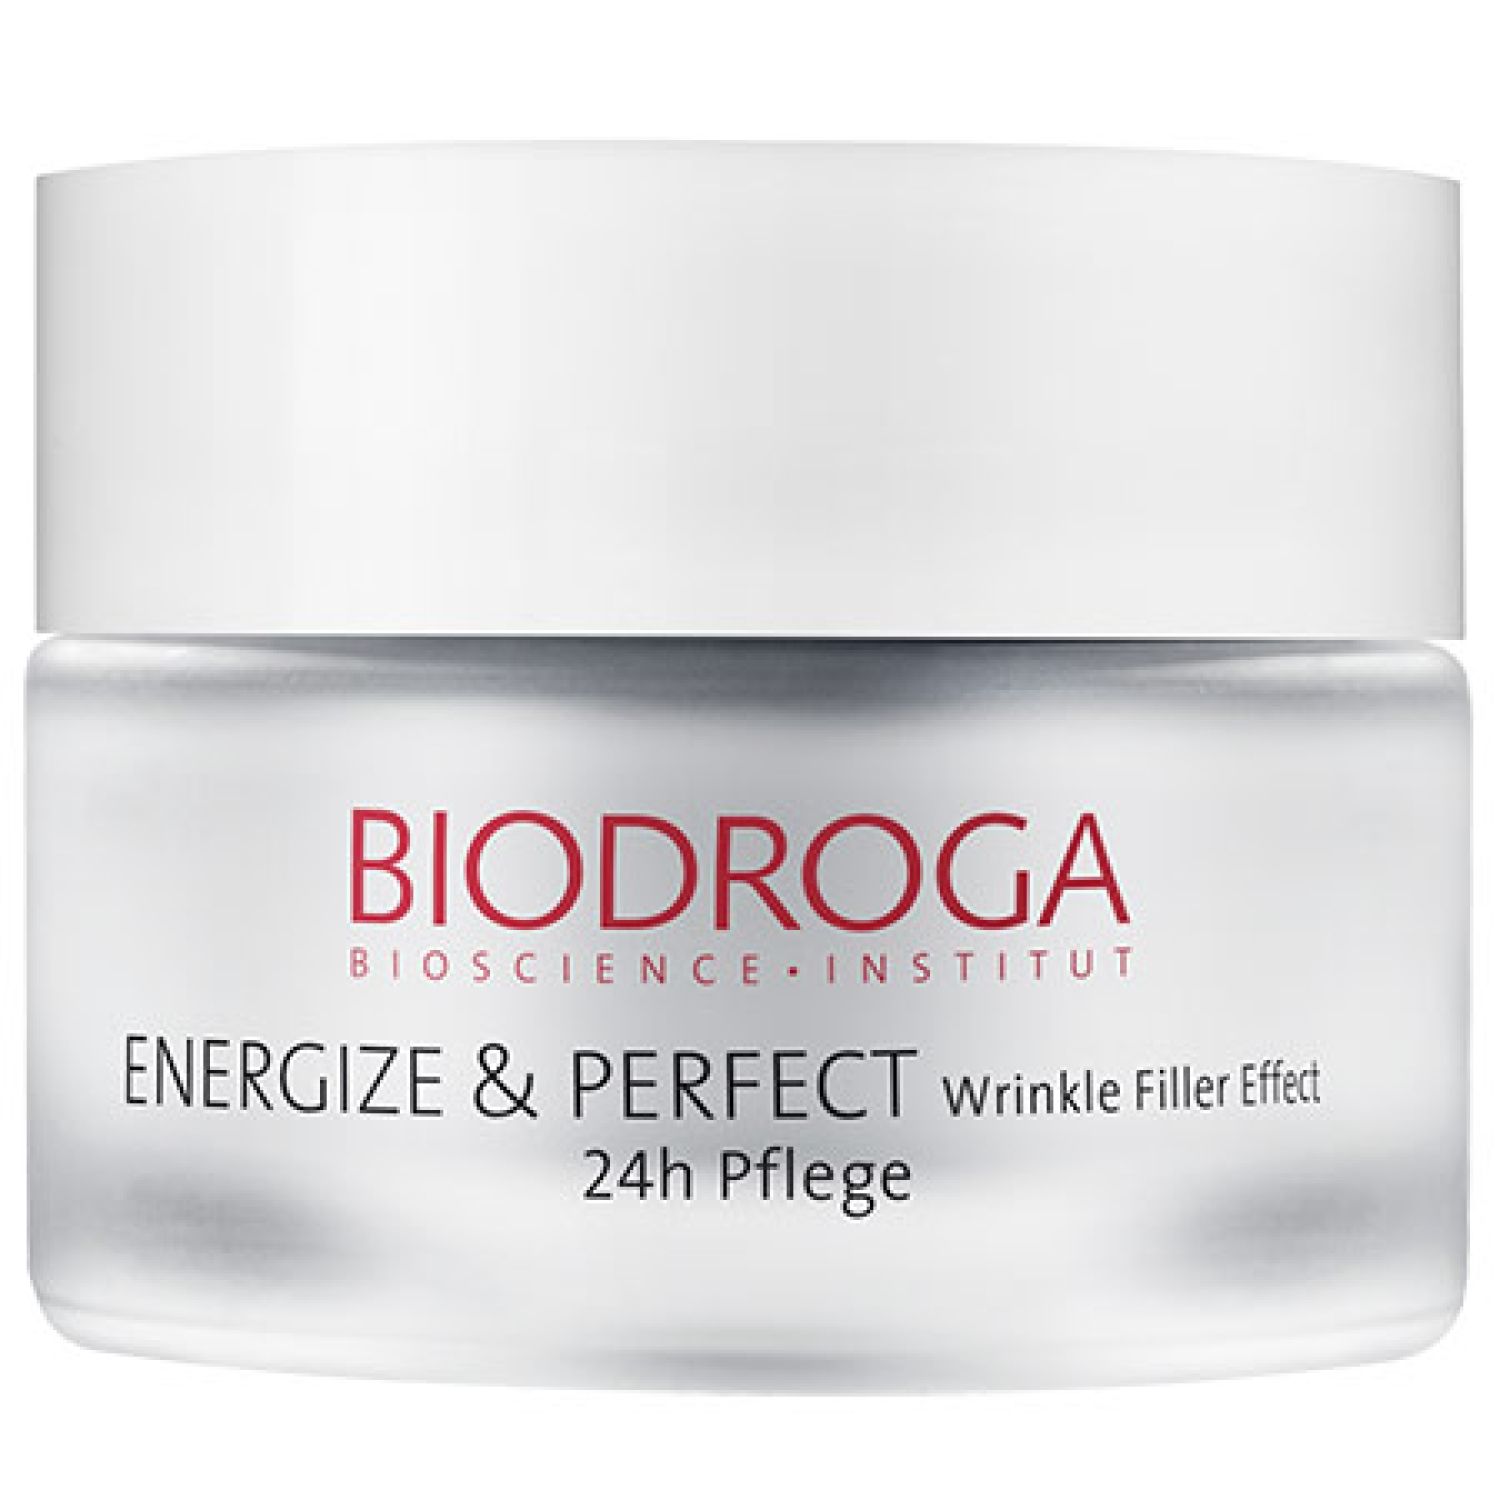 Biodroga Energize & Perfect Wrinkle Filler Effect 24h